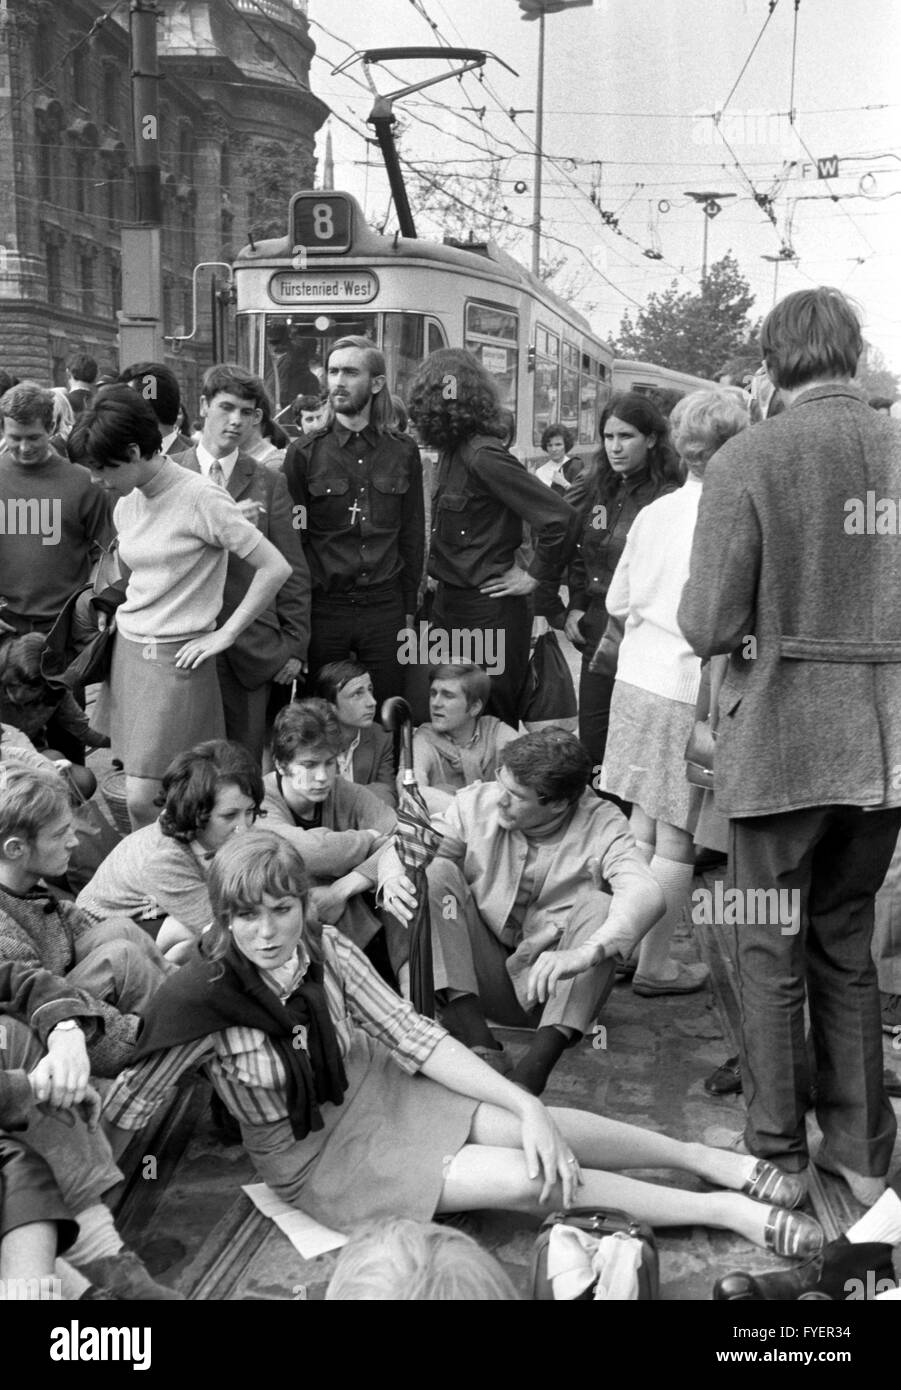 Demonstranten blockieren die Straßenbahnlinien am Stachus in München. Tausende von Studenten, Arbeiter und Angestellte demonstrierten am 29. Mai 1968 gegen die dritte Lesung der Notstandsgesetze im Bundestag. Stockfoto